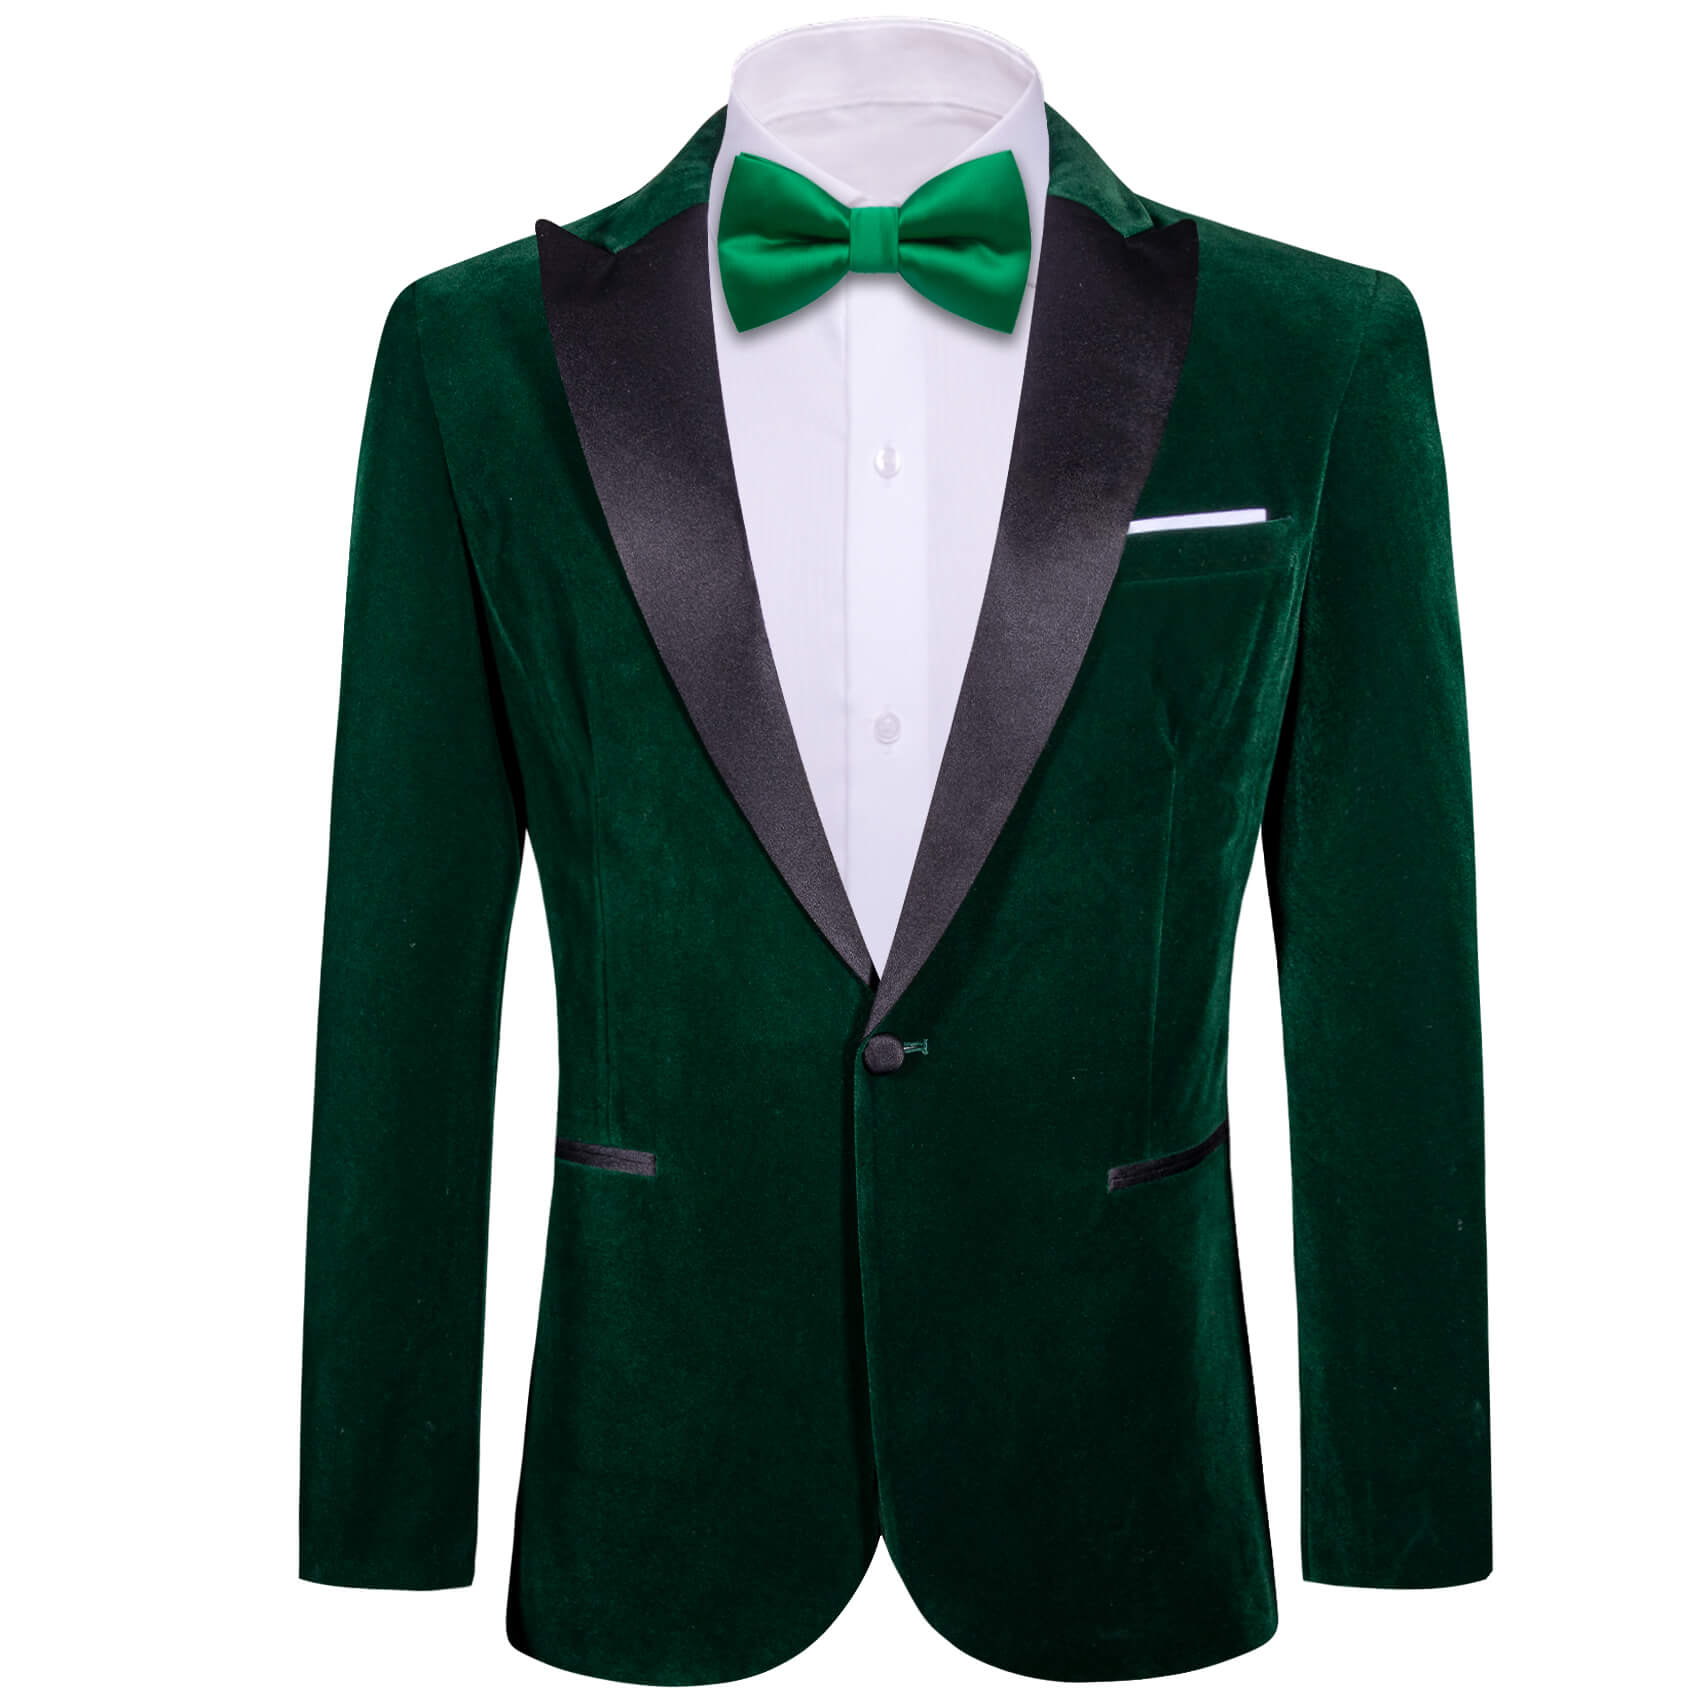 Barry.wang Men's Suit Dark Green Solid Silk Peak Collar Blazer Suit